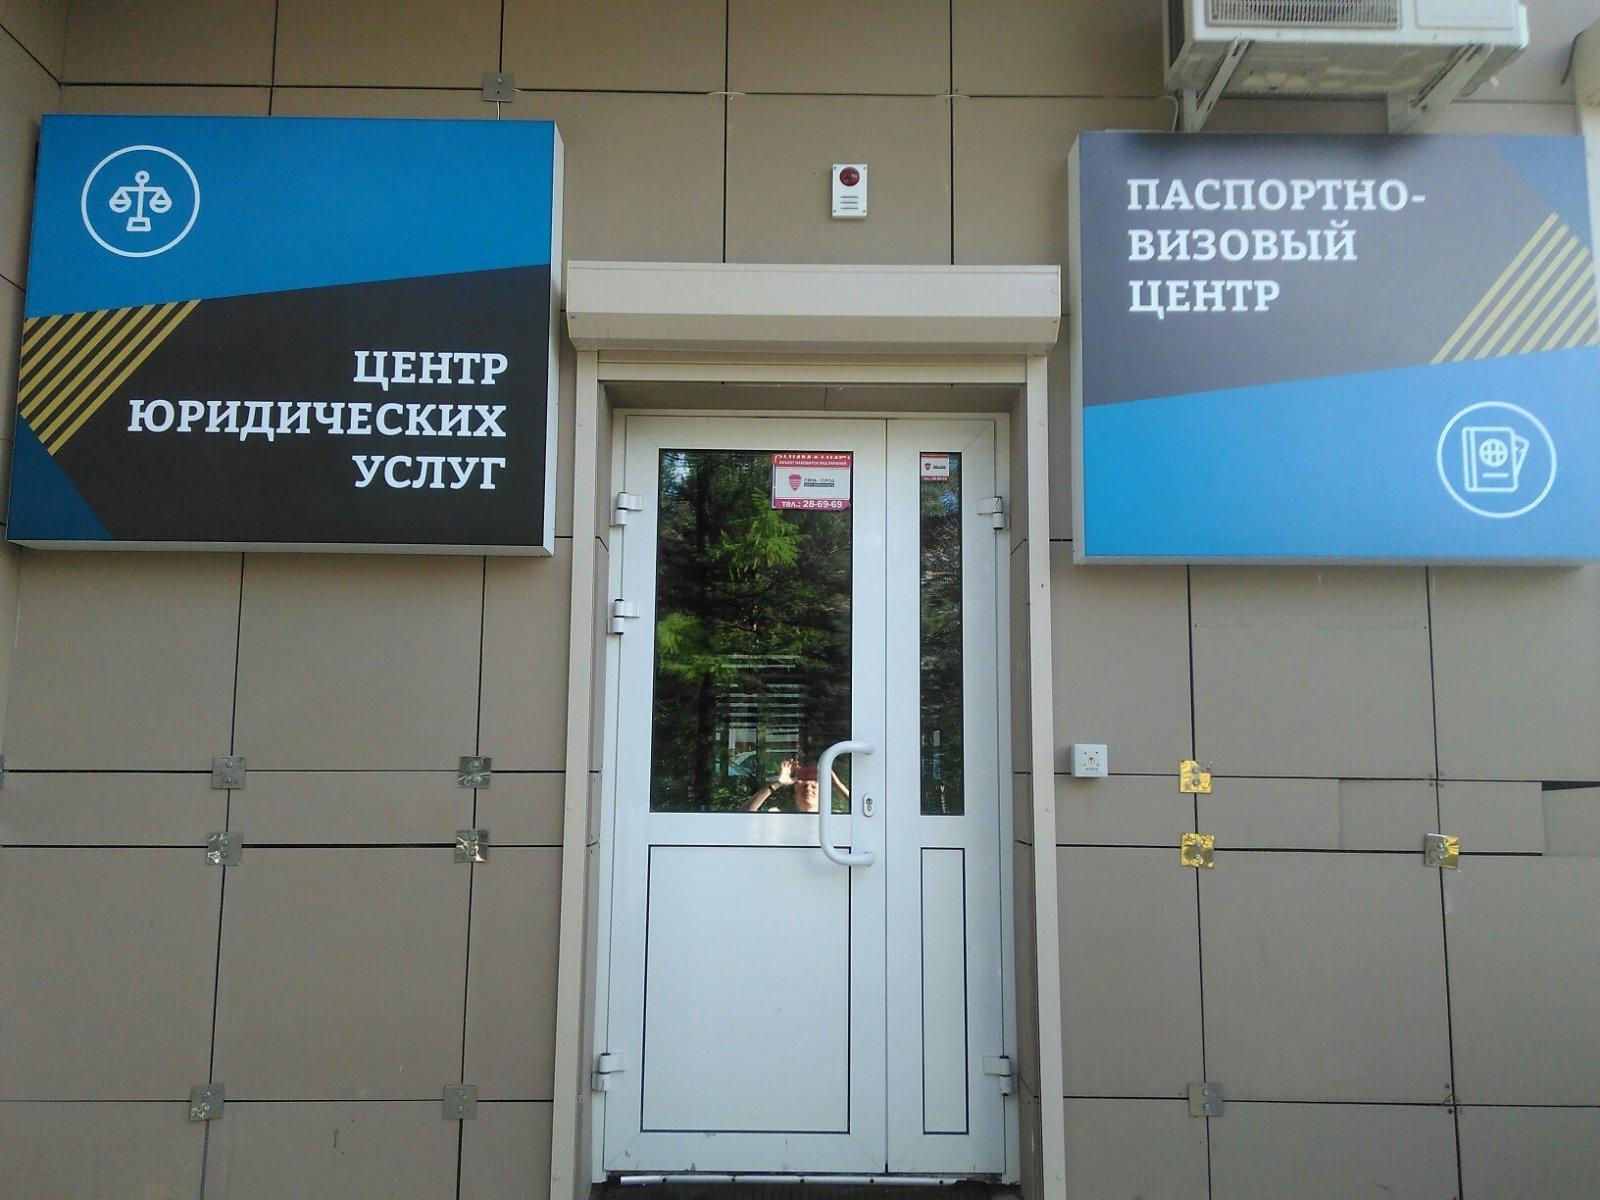 Телефон визовой службы. Визовый центр реклама. Визовый центр Екатеринбург. Услуги визового центра. Визовый центр логотип.